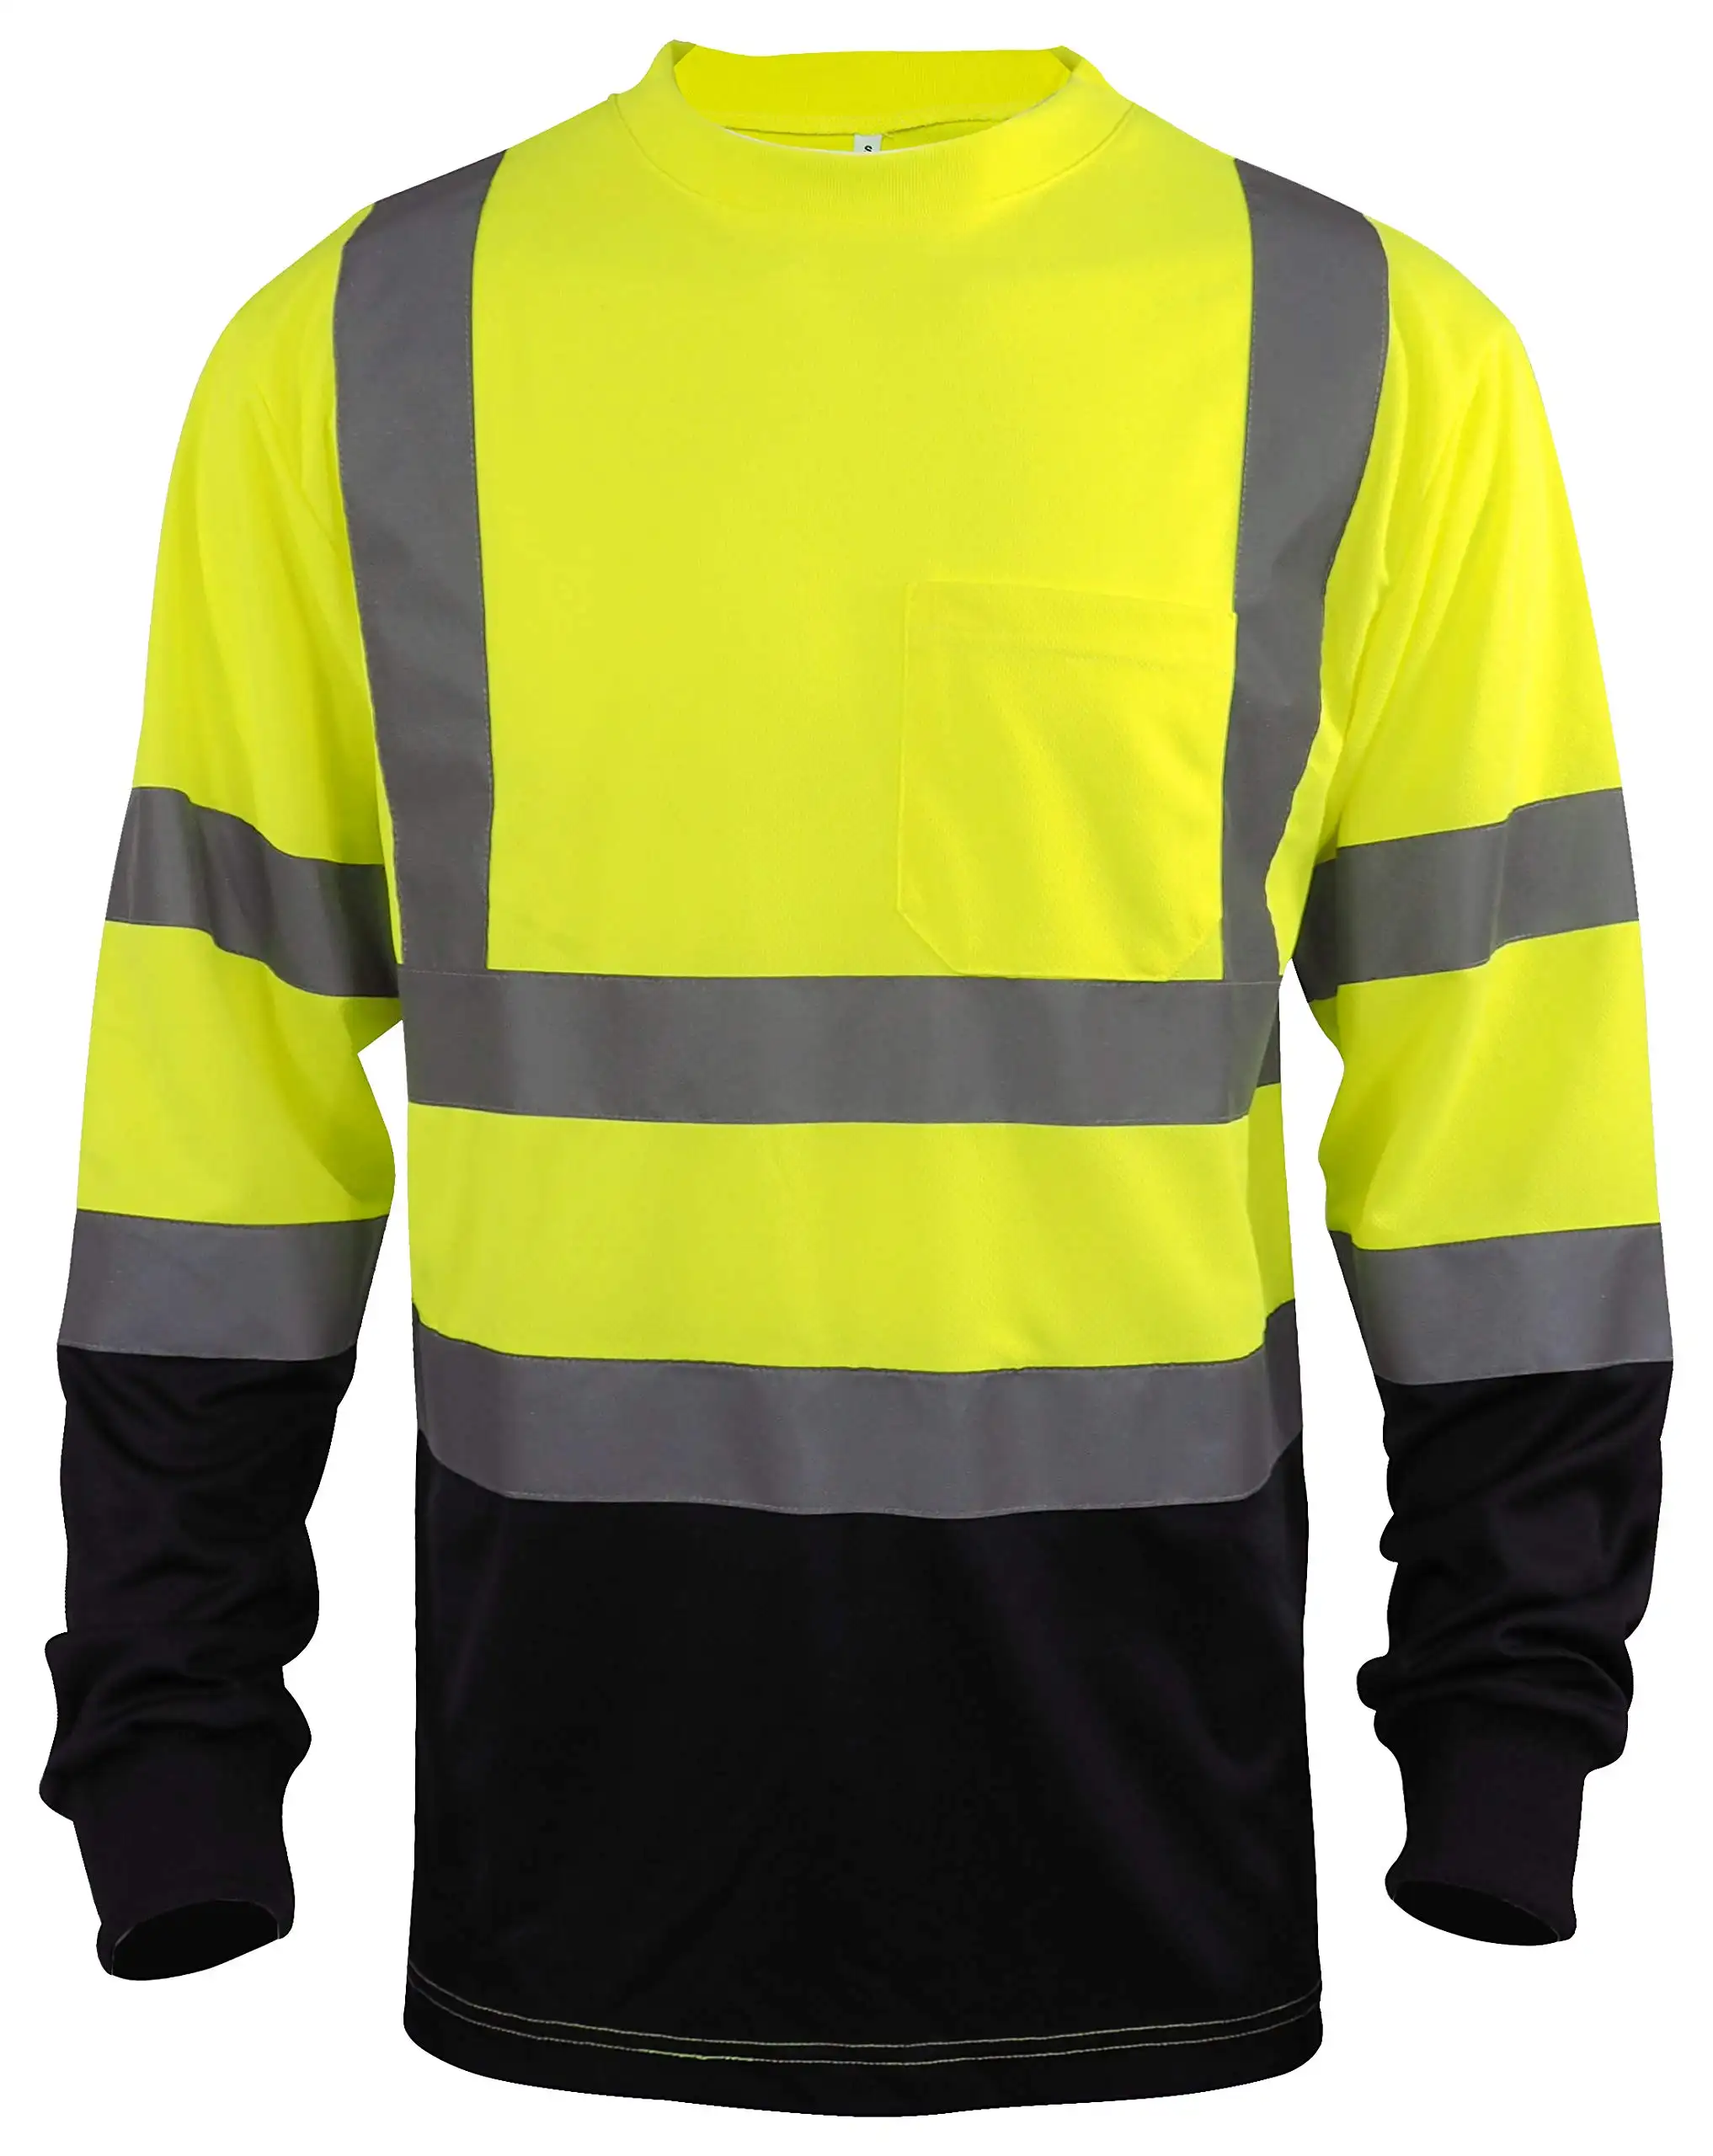 Maglietta Hi Vis classe 3 camicia da lavoro riflettente verde arancione manica lunga alta visibilità